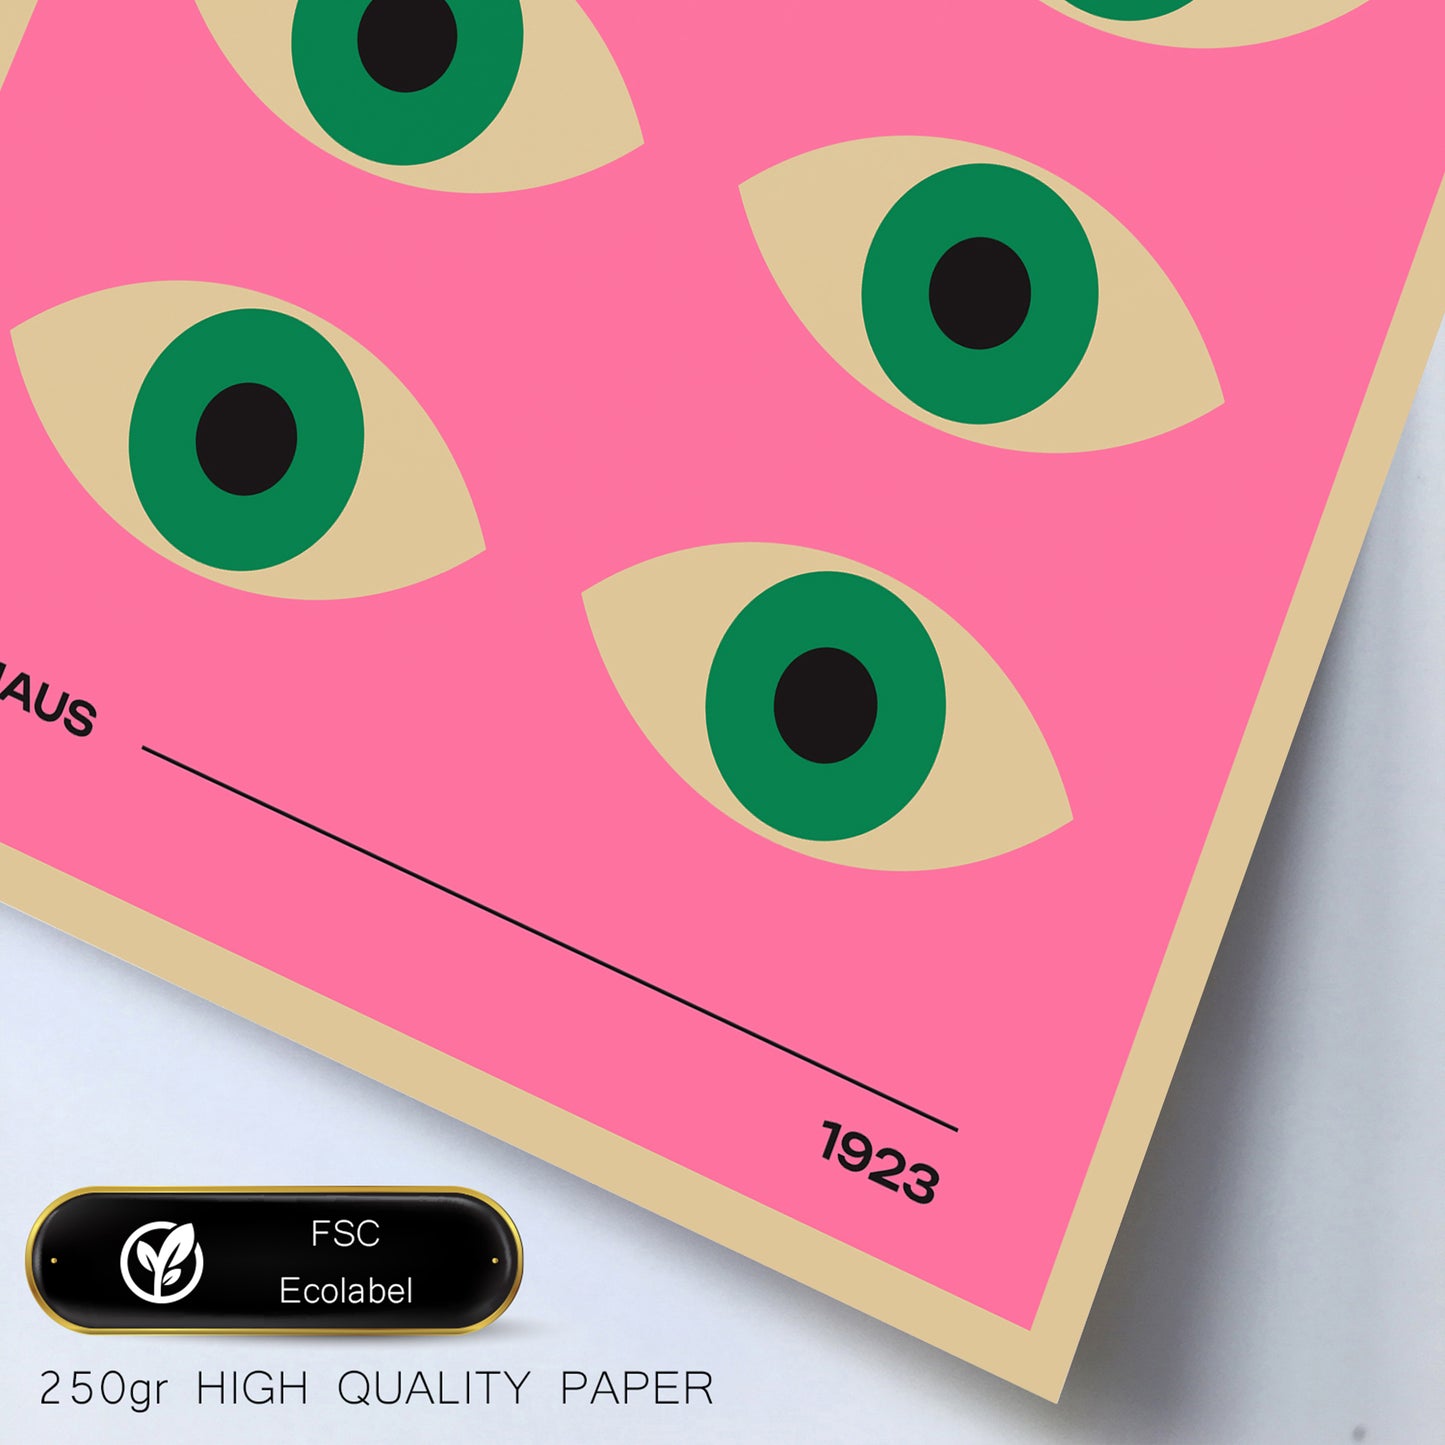 Geometrico Bauhaus colores viibrantes y ojos